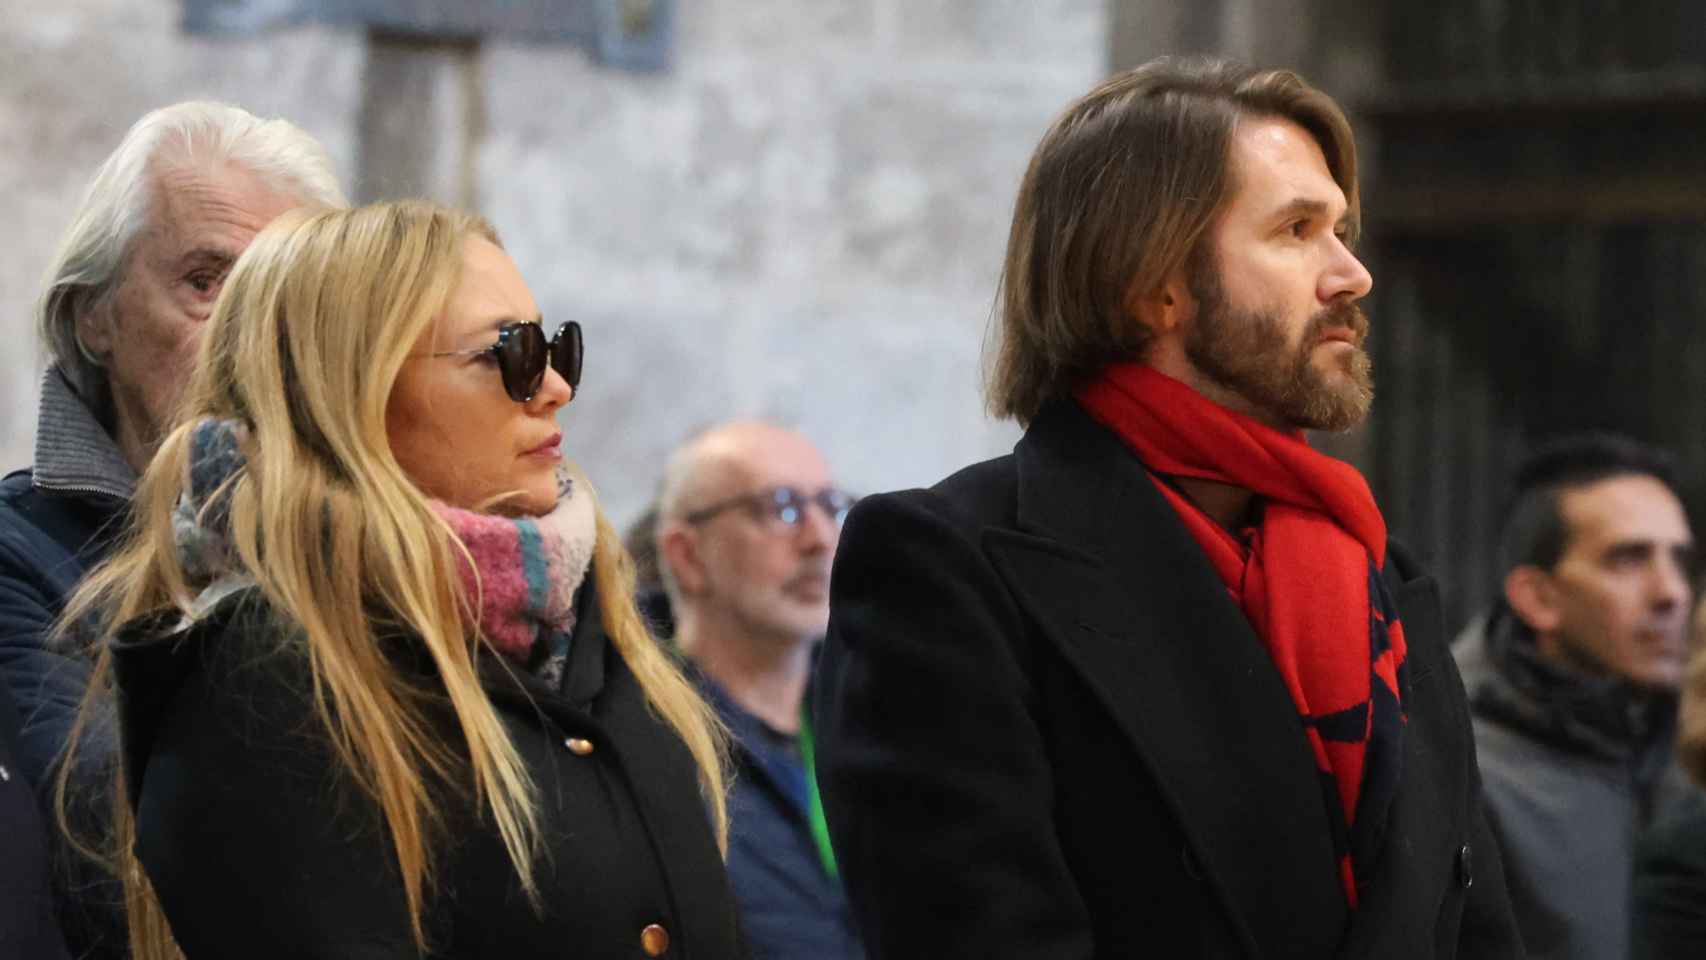 Diana Patricia, hija de Paco Marsó, junto a Manuel Martínez Velasco, en la catedral de Valladolid, el pasado domingo 3 de diciembre.